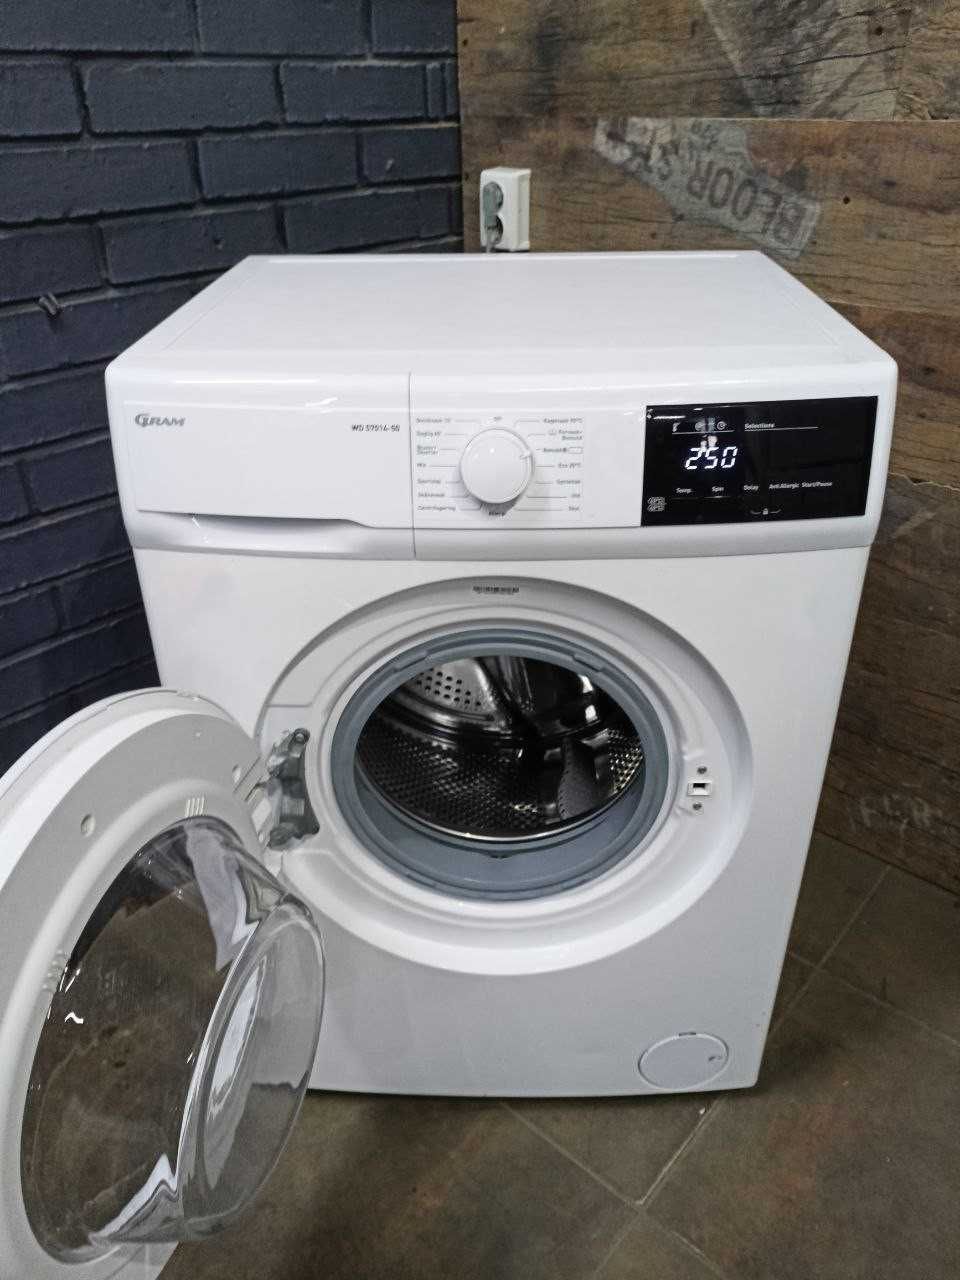 пральна  (стиральная ) машина  Miele W 3285 гарантія пралка б/в  б/у